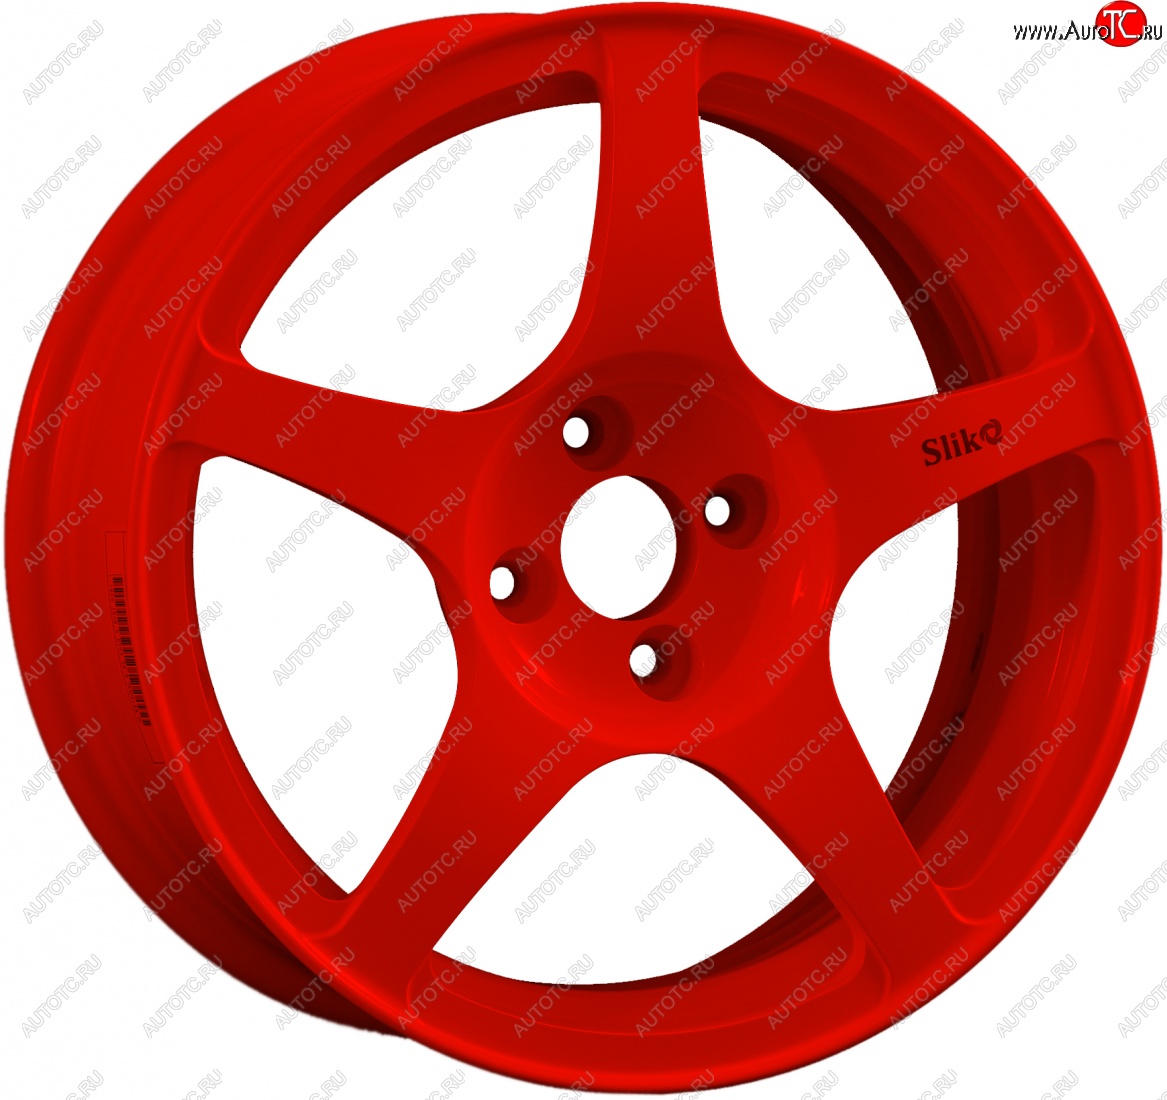 10 349 р. Кованый диск Slik classik R16x6.5 Красный (RED) 6.5x16 Toyota Allion T260 седан 2-ой рестайлинг (2016-2021) 5x100.0xDIA54.1xET45.0 (Цвет: RED)